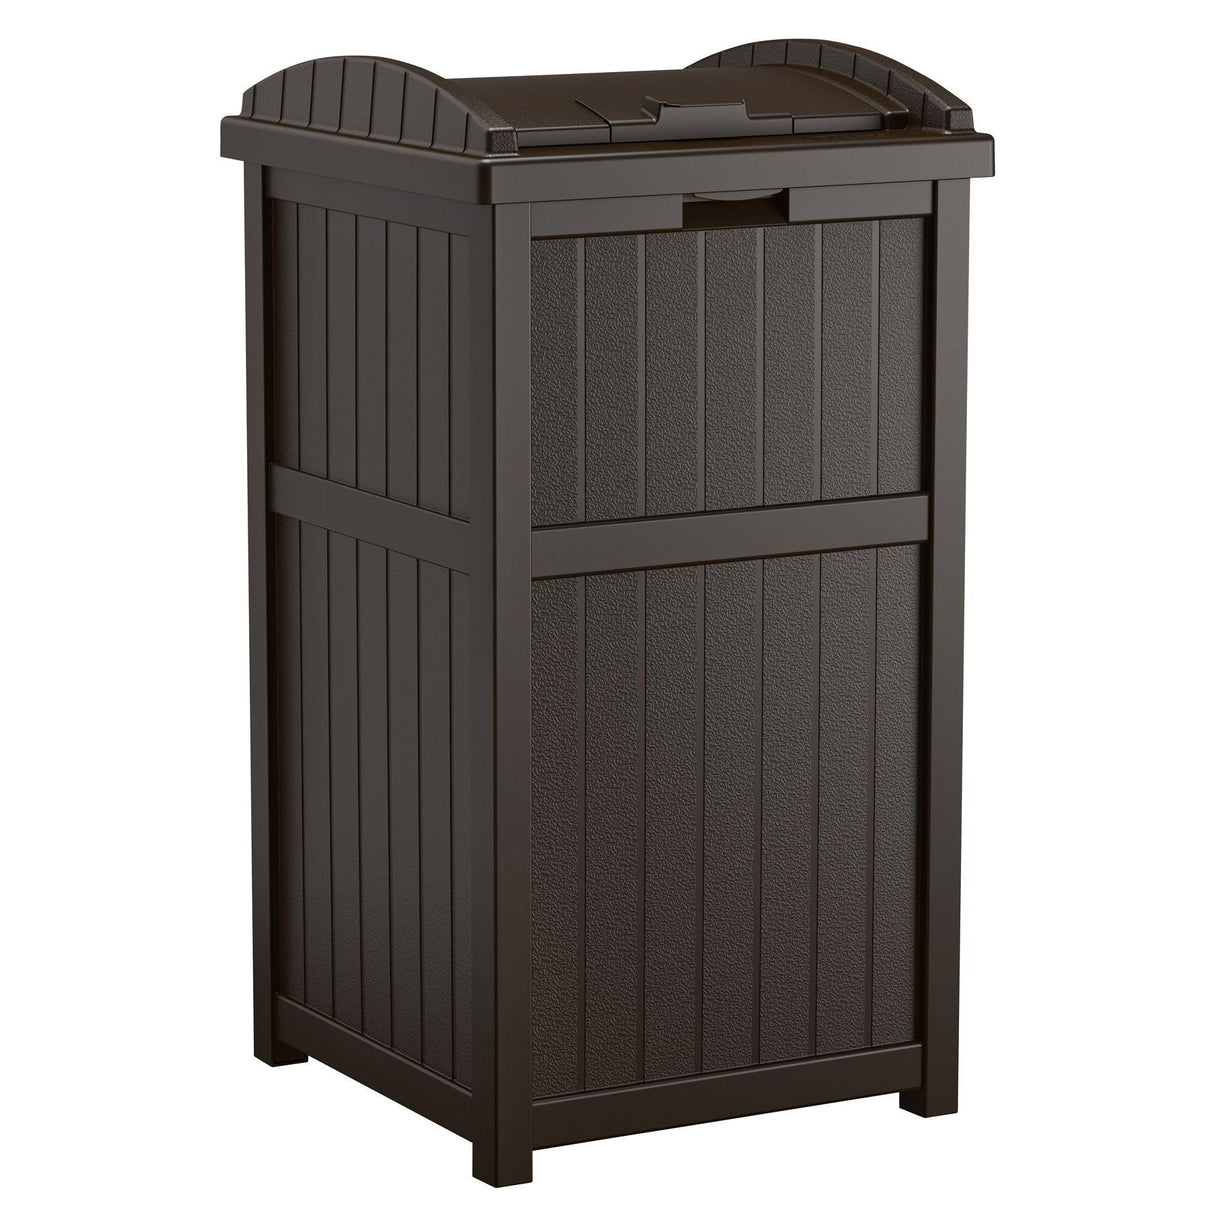 Suncast Trash Hideaway Outdoor Garbage Bin & 99 Gallon Deck Box W/ Seat, Java